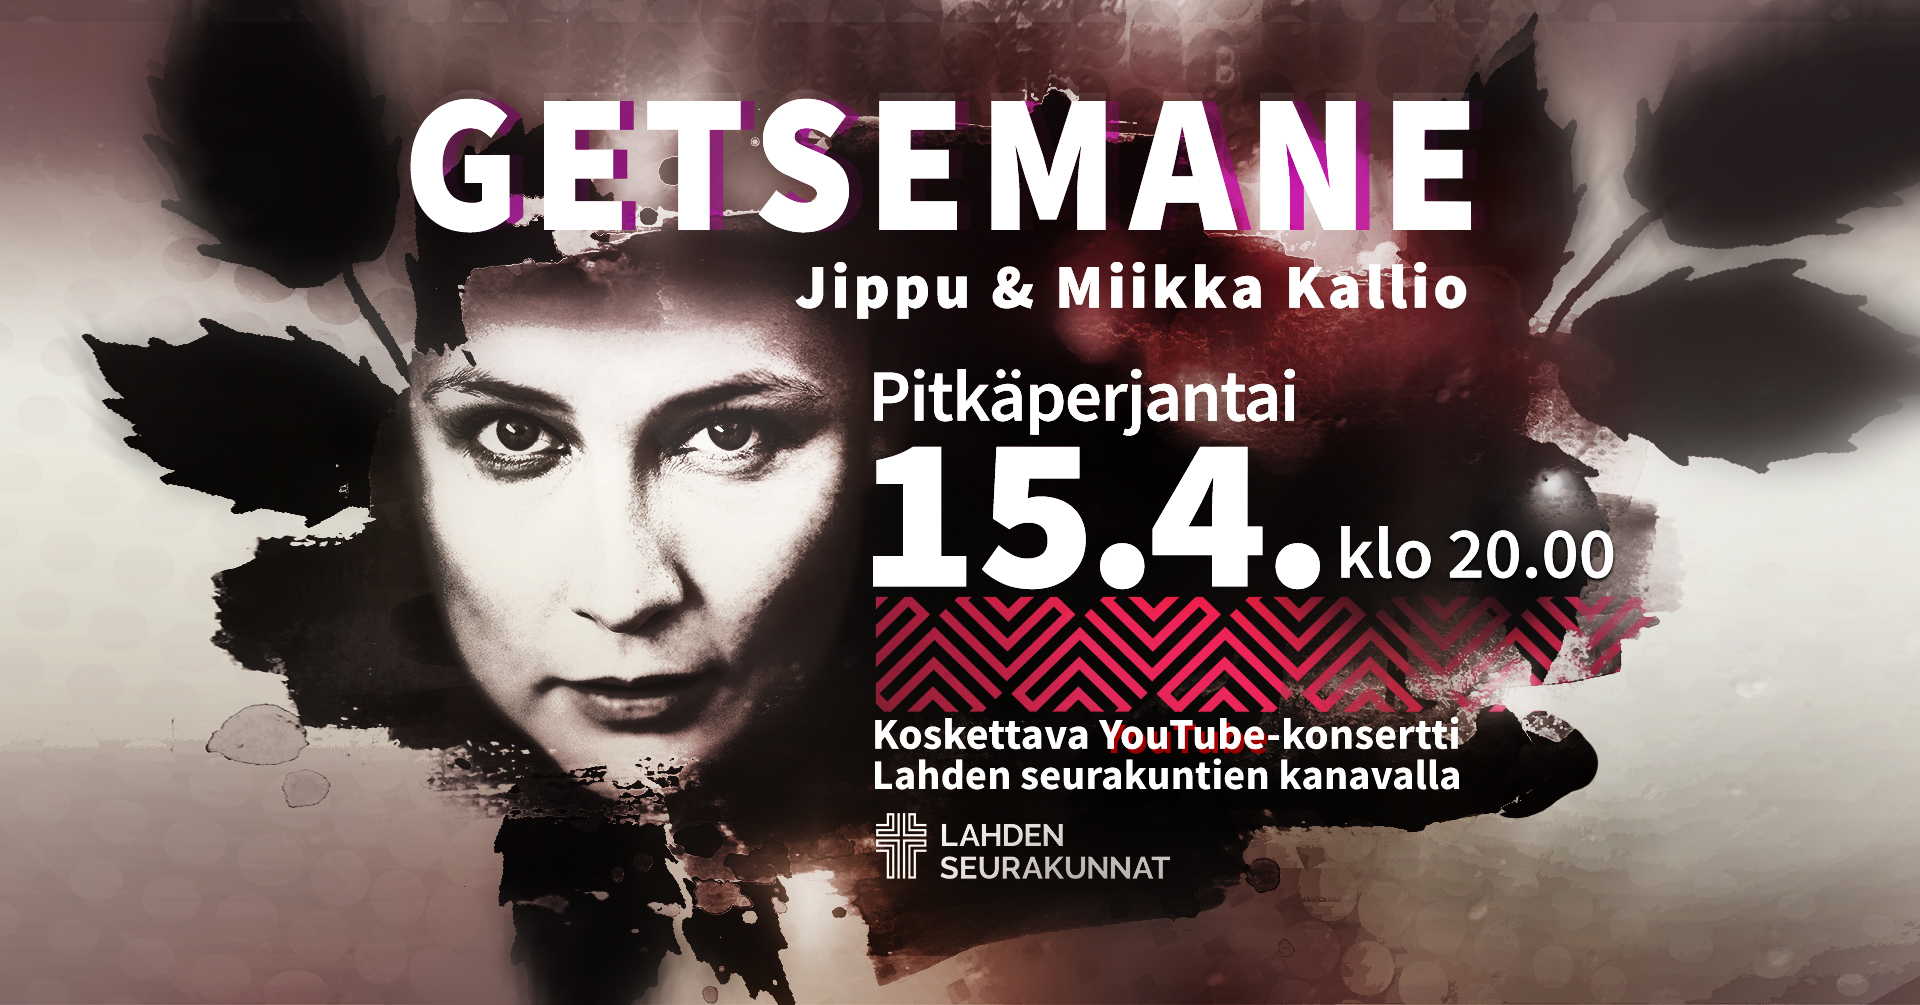 Kuvassa on Jipun ja Miikka Kallion Getsemane-konsertin mainos.